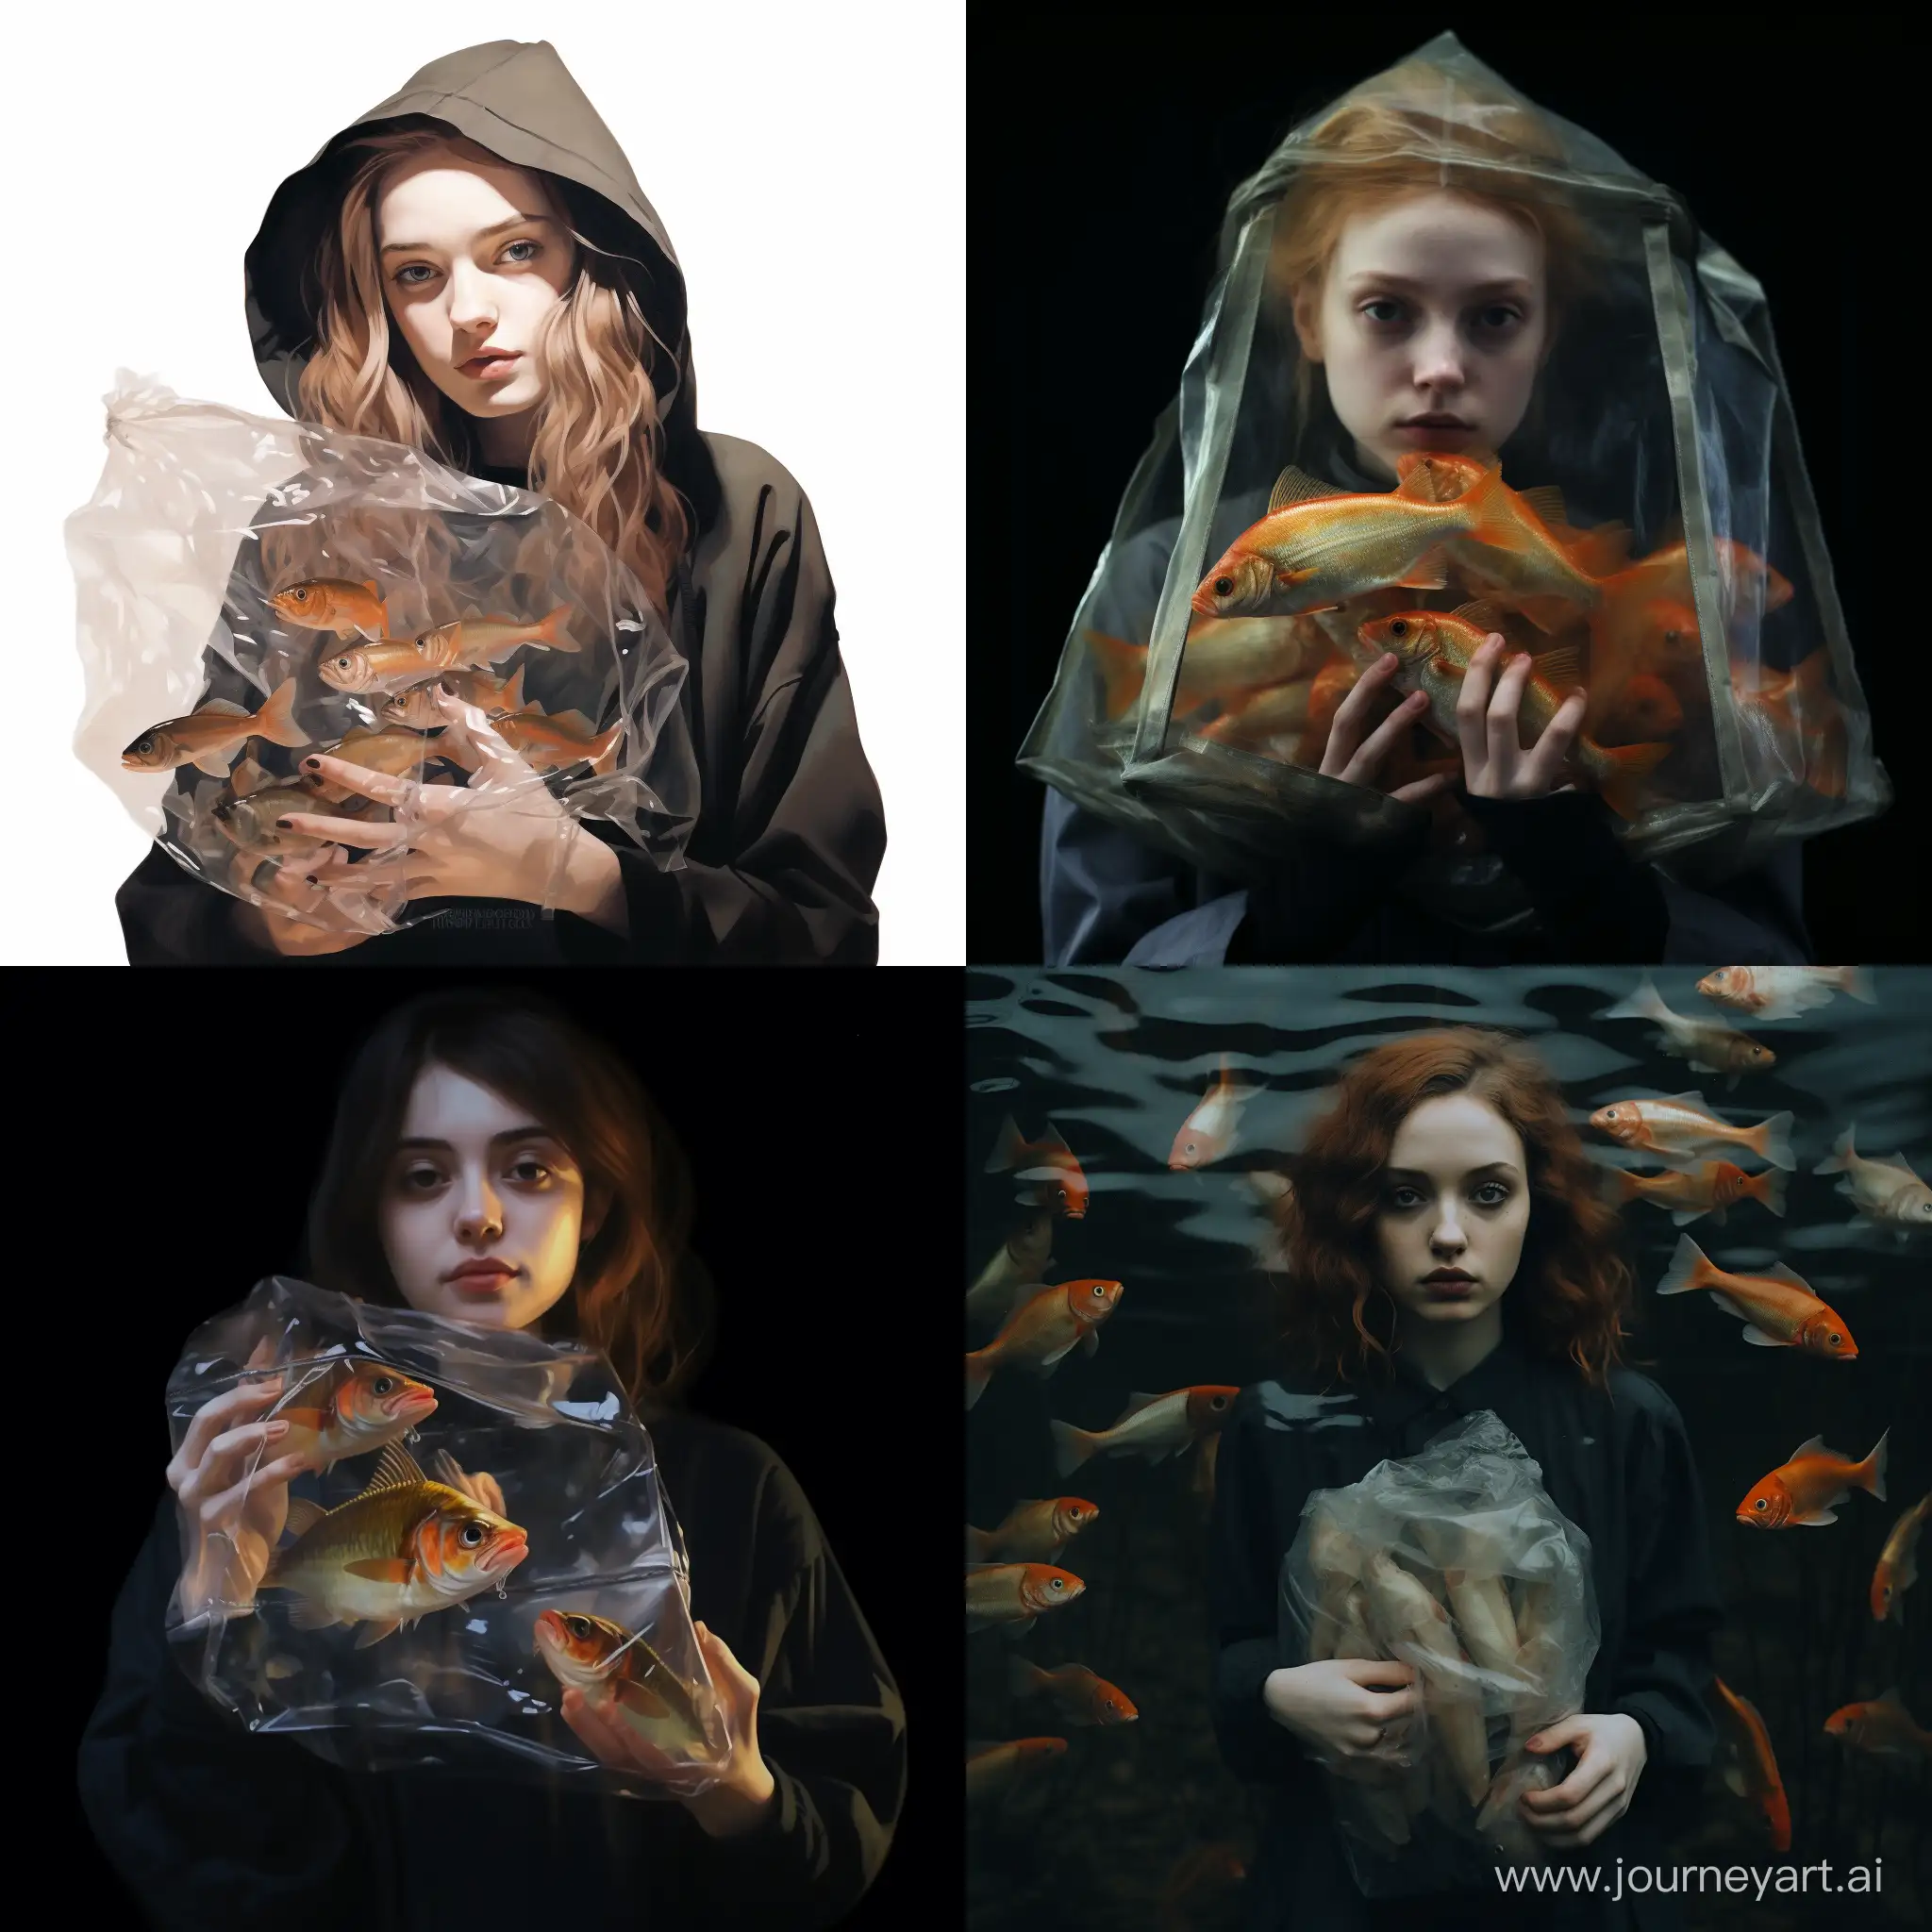 Young-Girl-Holding-a-Transparent-Bag-of-Fish-Unique-Aquatic-Adventure